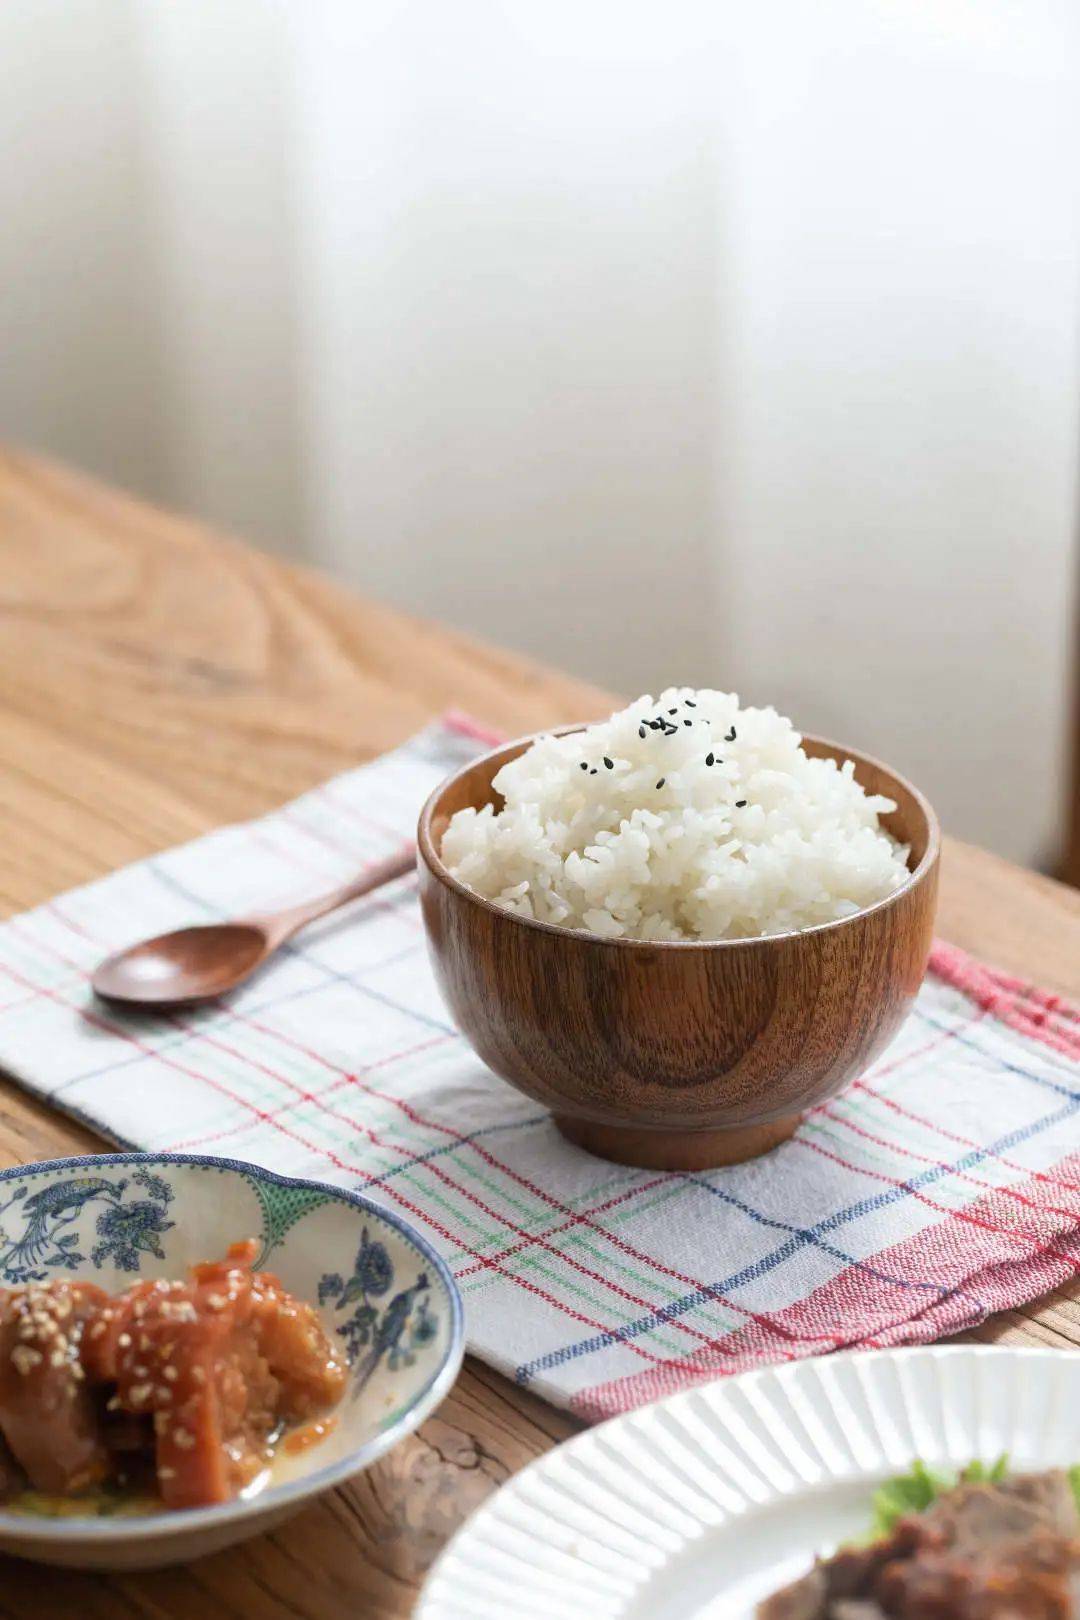 俗语有云"一餐五常米,浑忘酒肉香,说的就是一碗好吃的五常大米饭,不